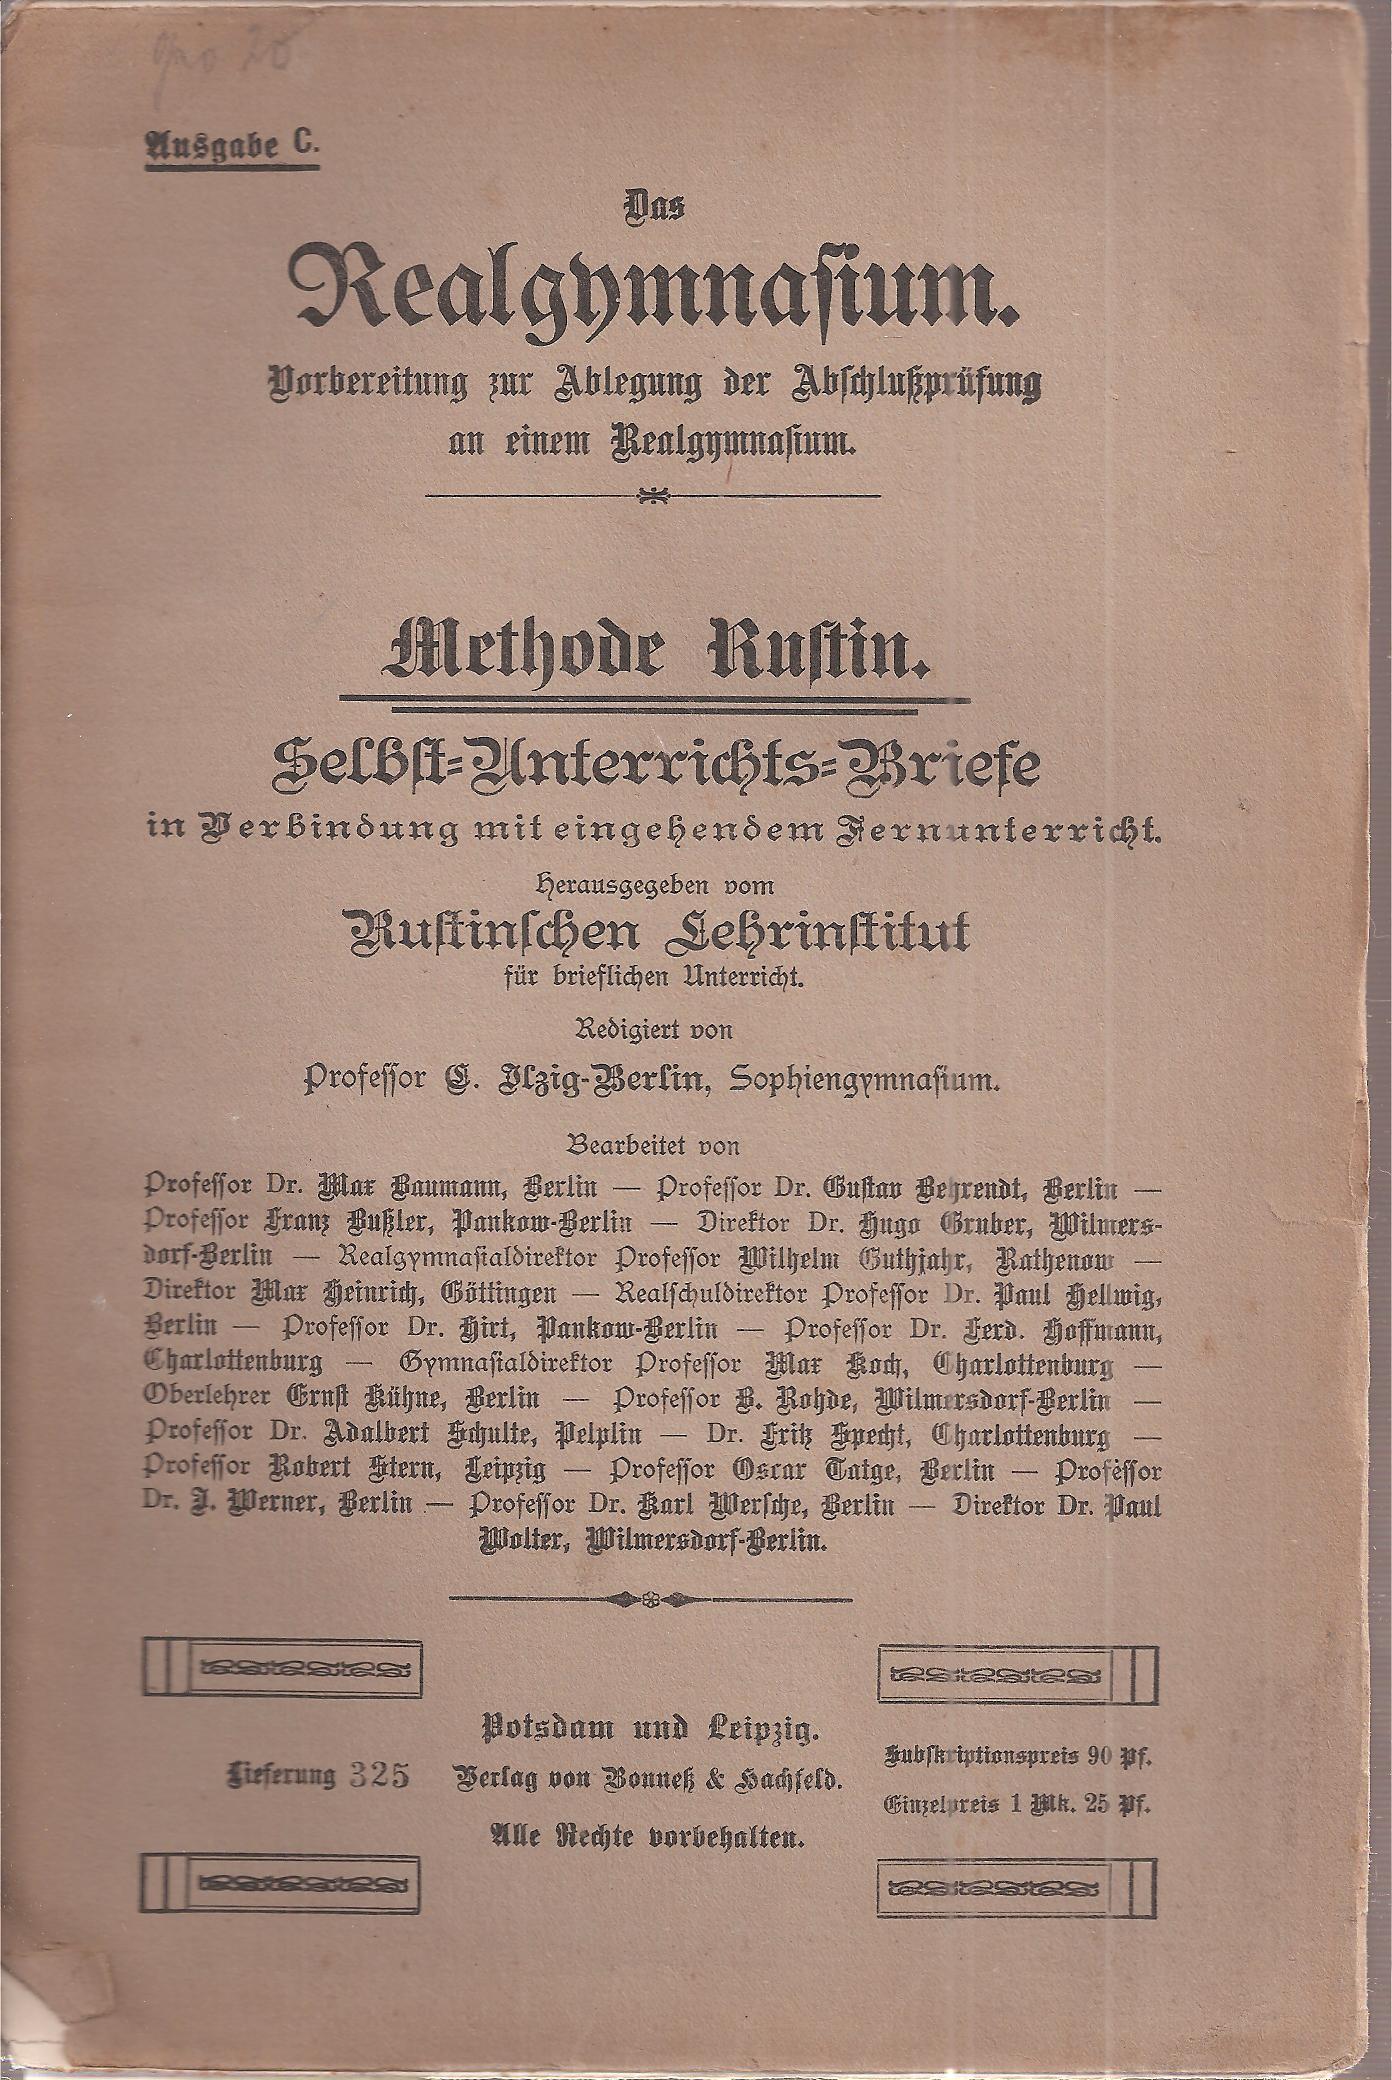 Rustinsches Lehrinstitut (Hsg.)  Selbst-Unterrichts-Briefe Methode Rustin Brief 20 Ausgabe C 